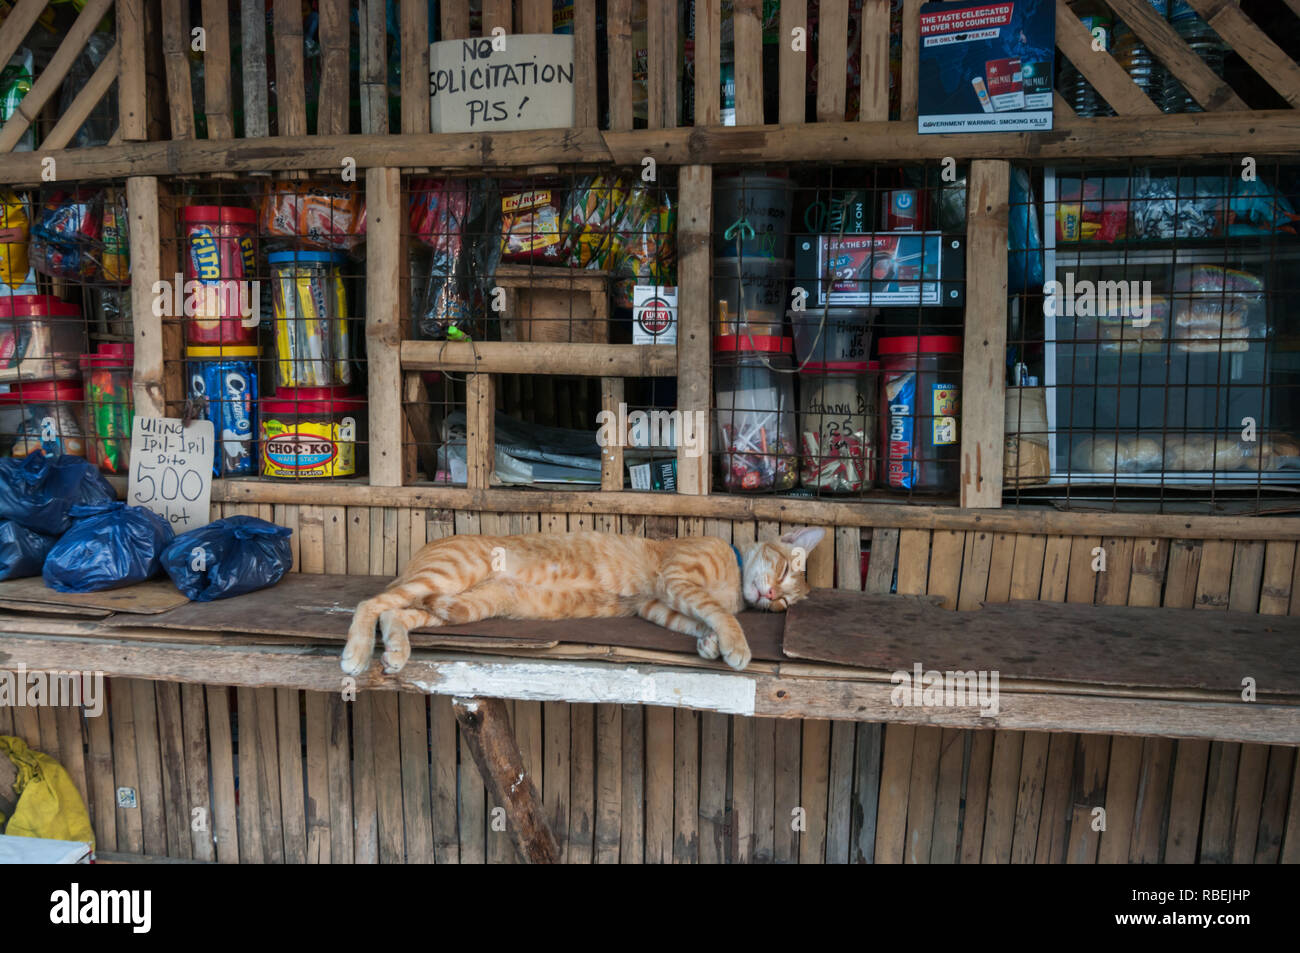 Vista laterale del sano guardando i gatti che indossa il collare pet prendendo un gatto nap sul pesce persico in un negozio dove il business sembra rallentare nelle Filippine. Foto Stock